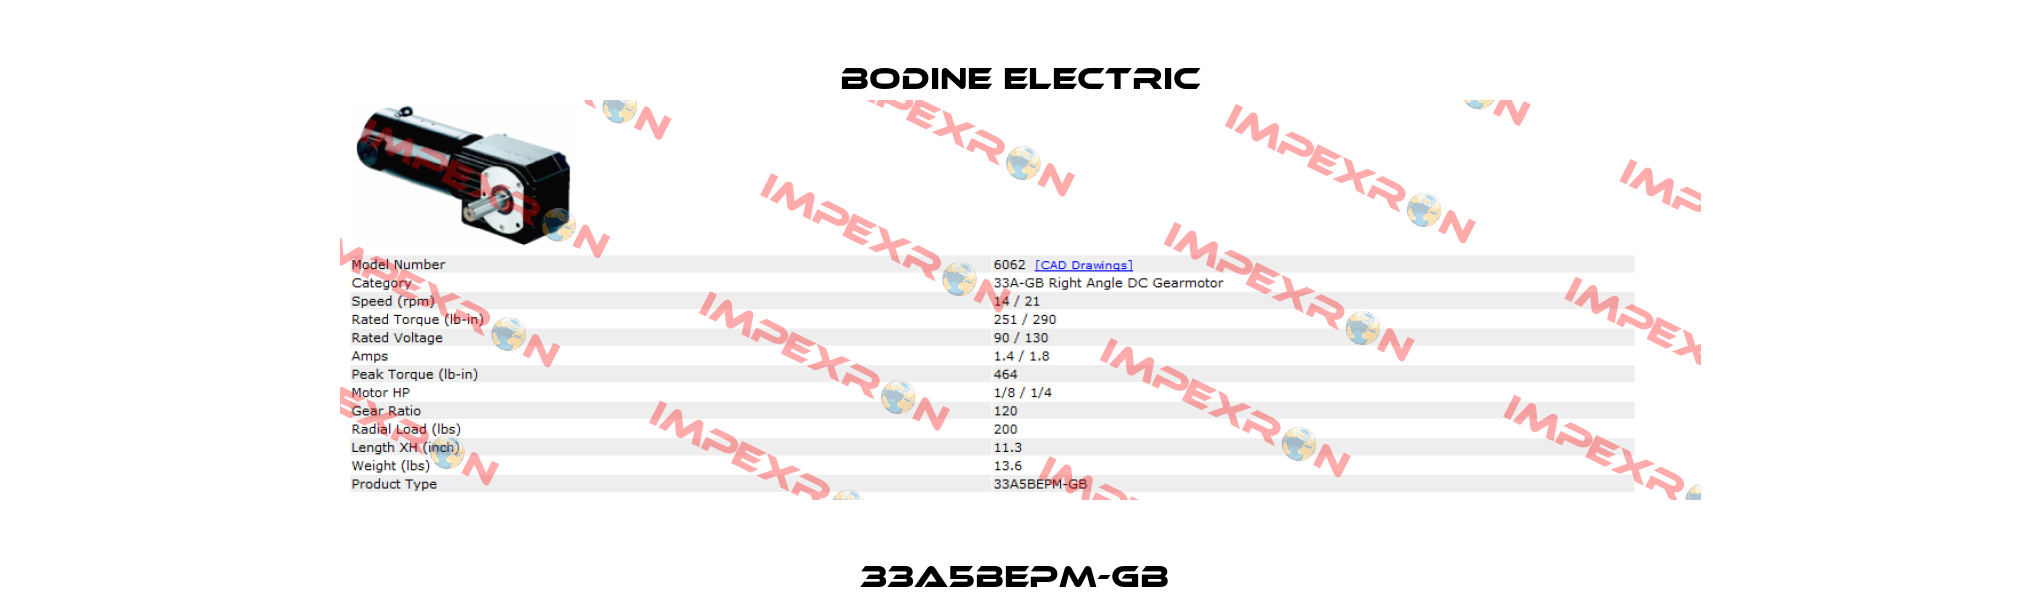 33A5BEPM-GB  BODINE ELECTRIC